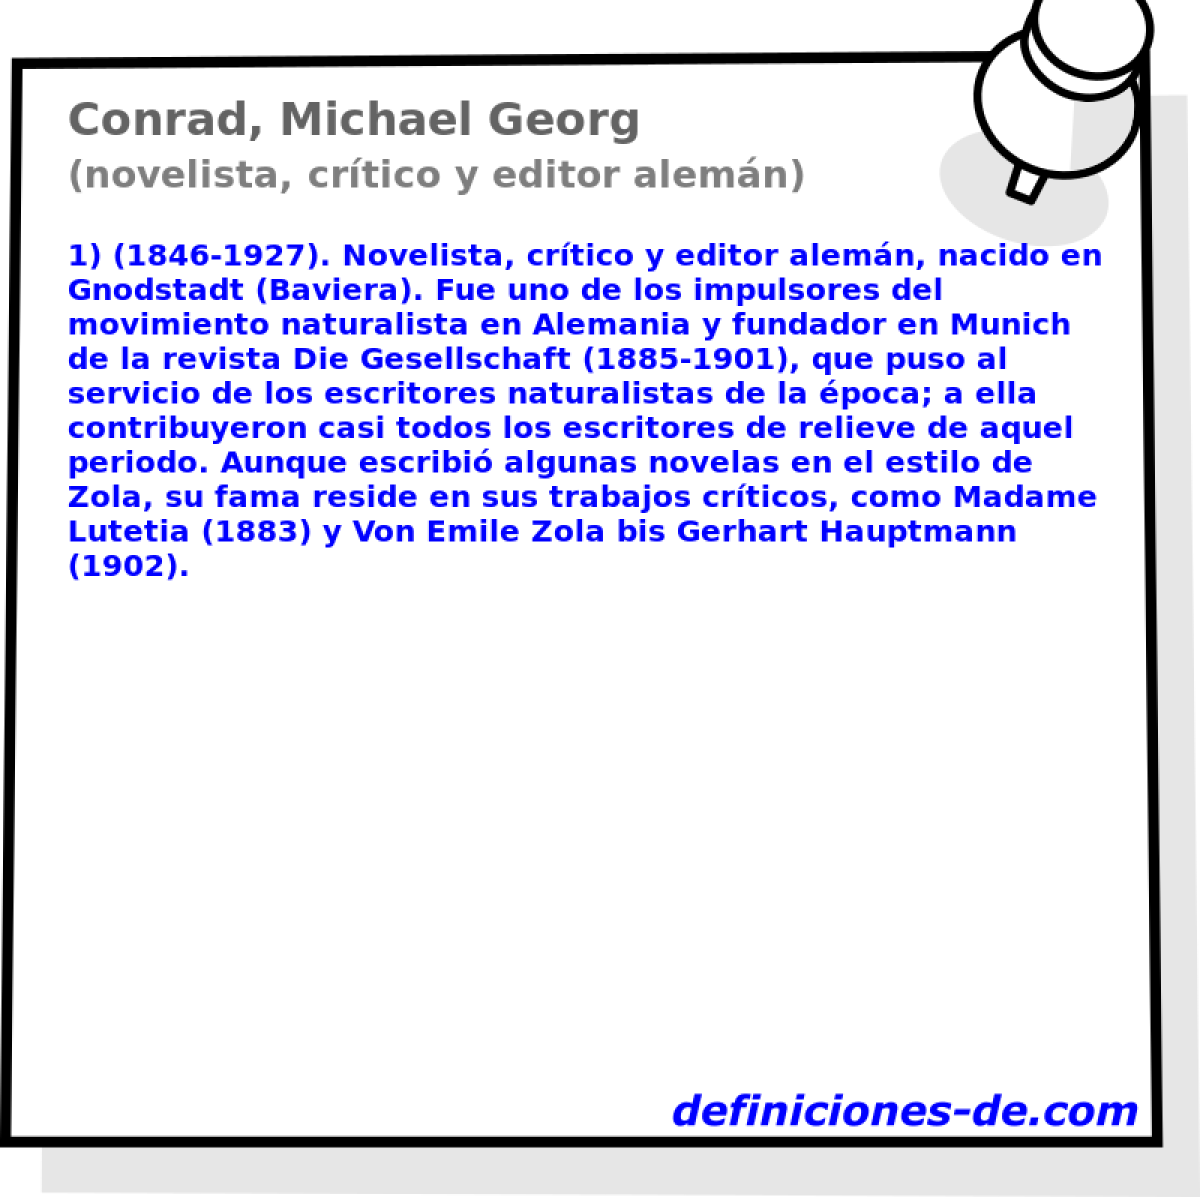 Conrad, Michael Georg (novelista, crtico y editor alemn)